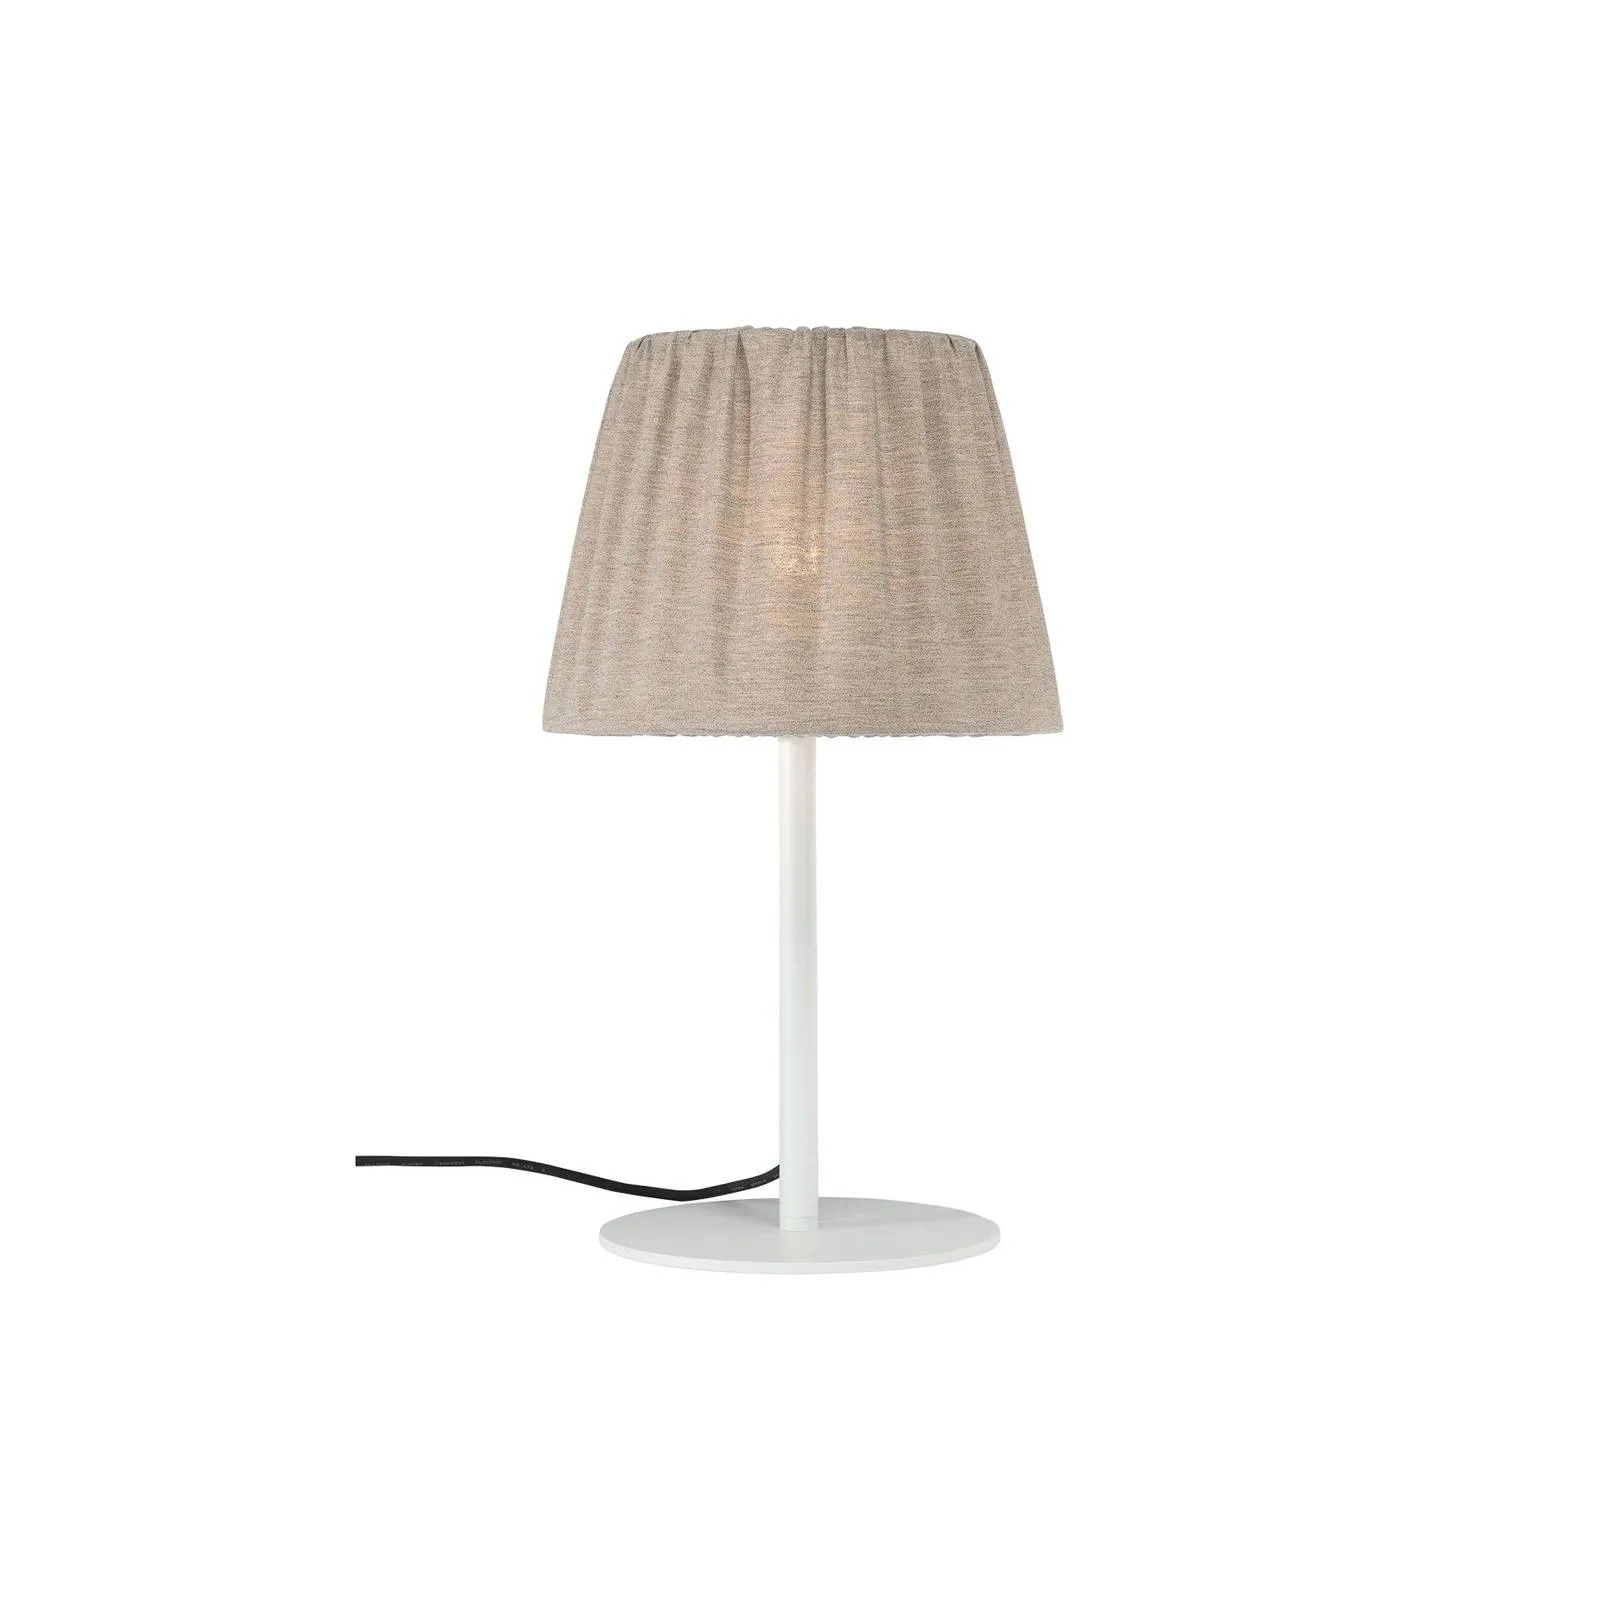  lampada da tavolo per esterni Agnar, bianco/marrone, 57 cm